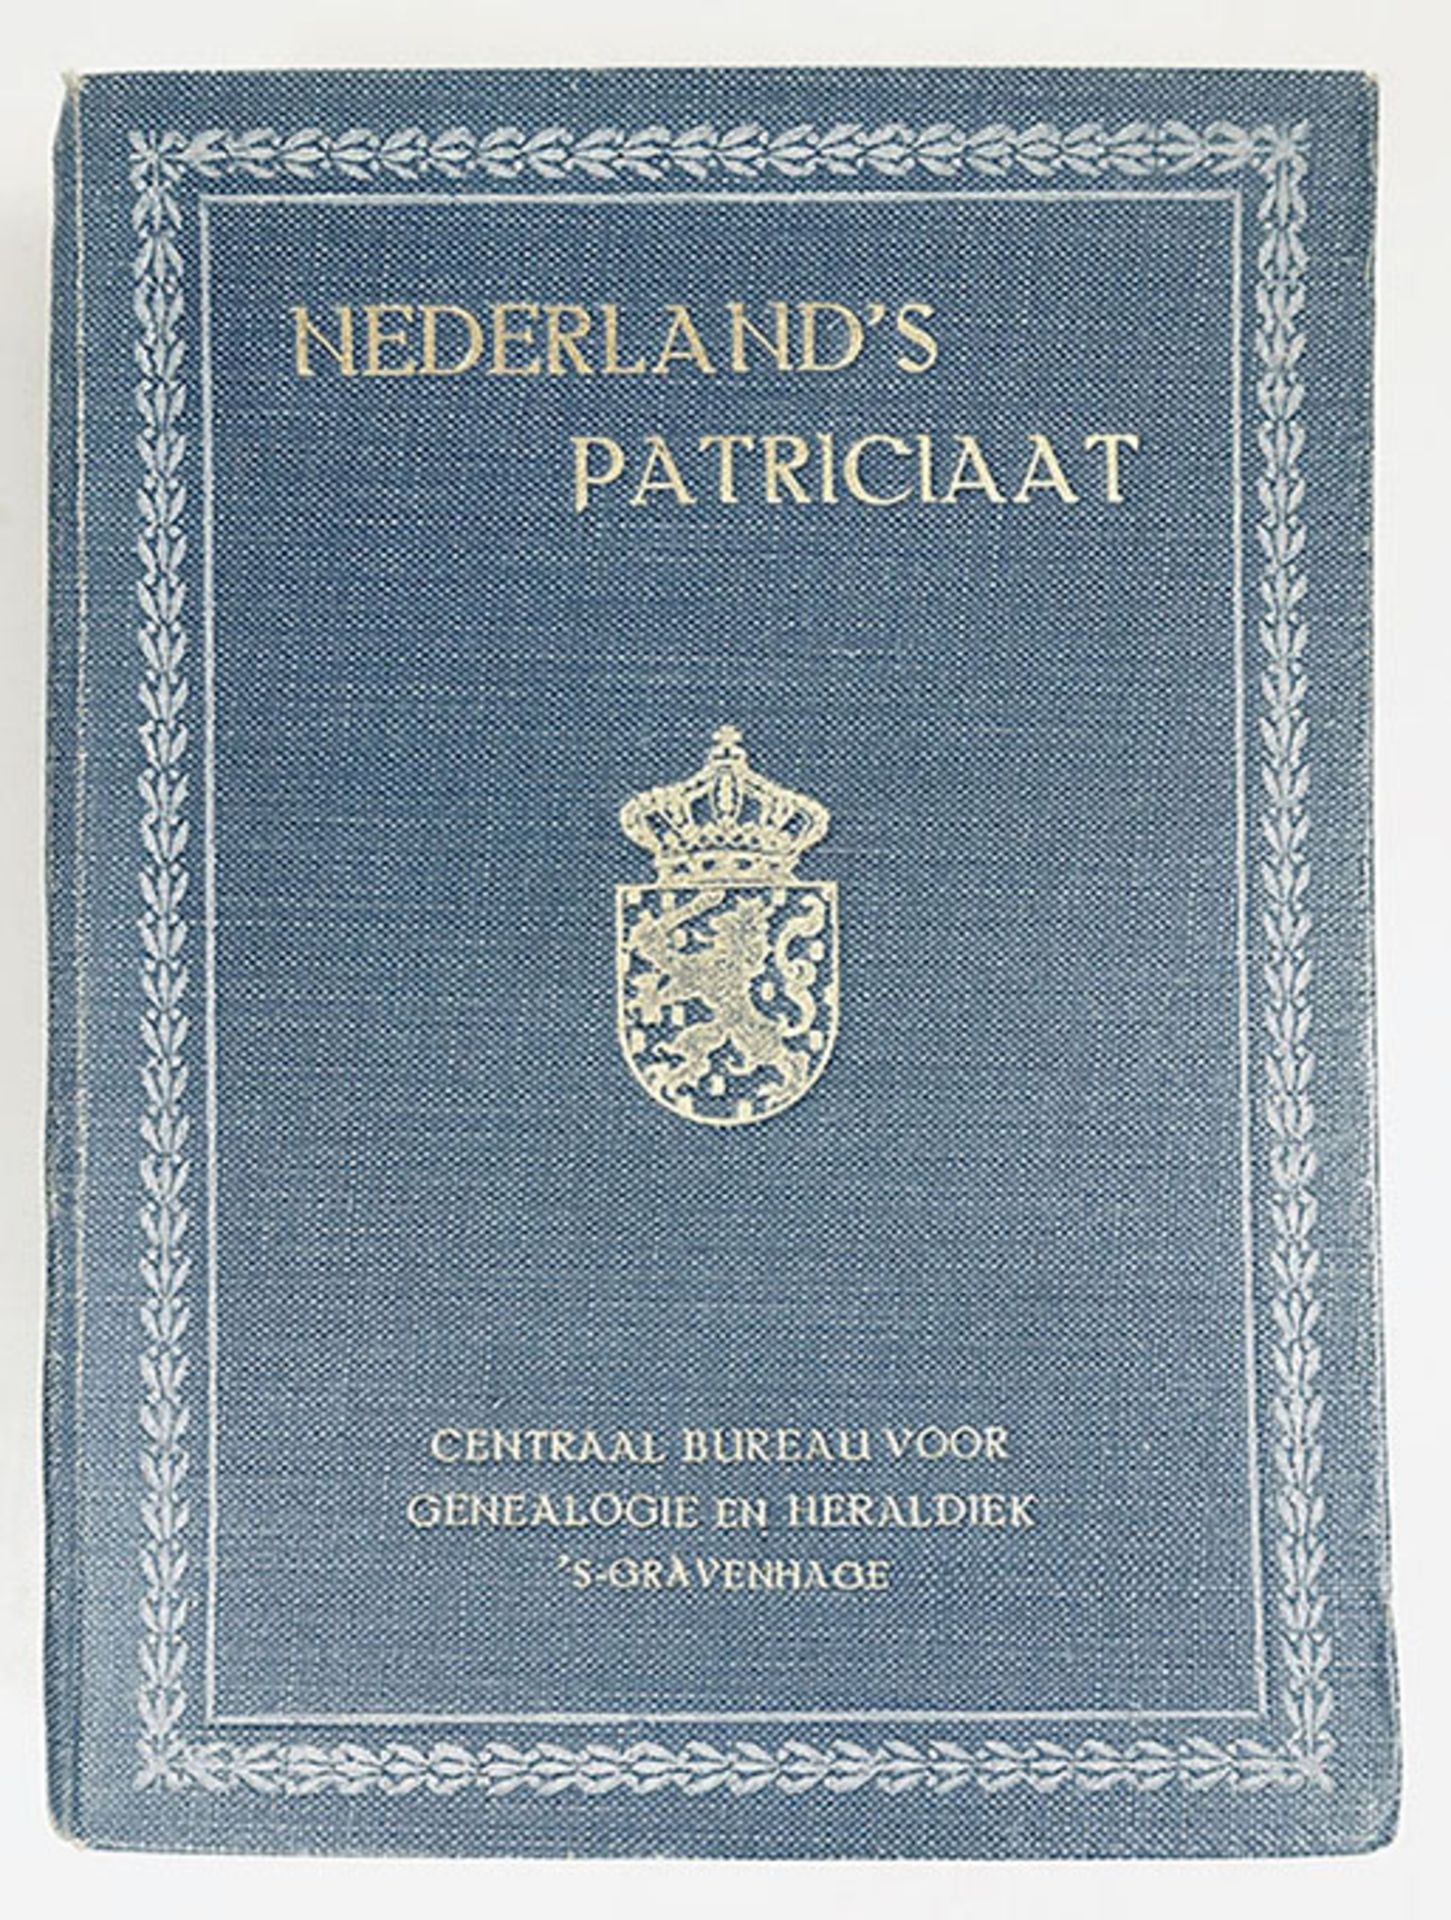 NEDERLAND'S PATRICIAAT. Jg. 1-87. 's-Grav., Centr. Bur. voor Genealogie en Heraldiek, 1910-2006. 87